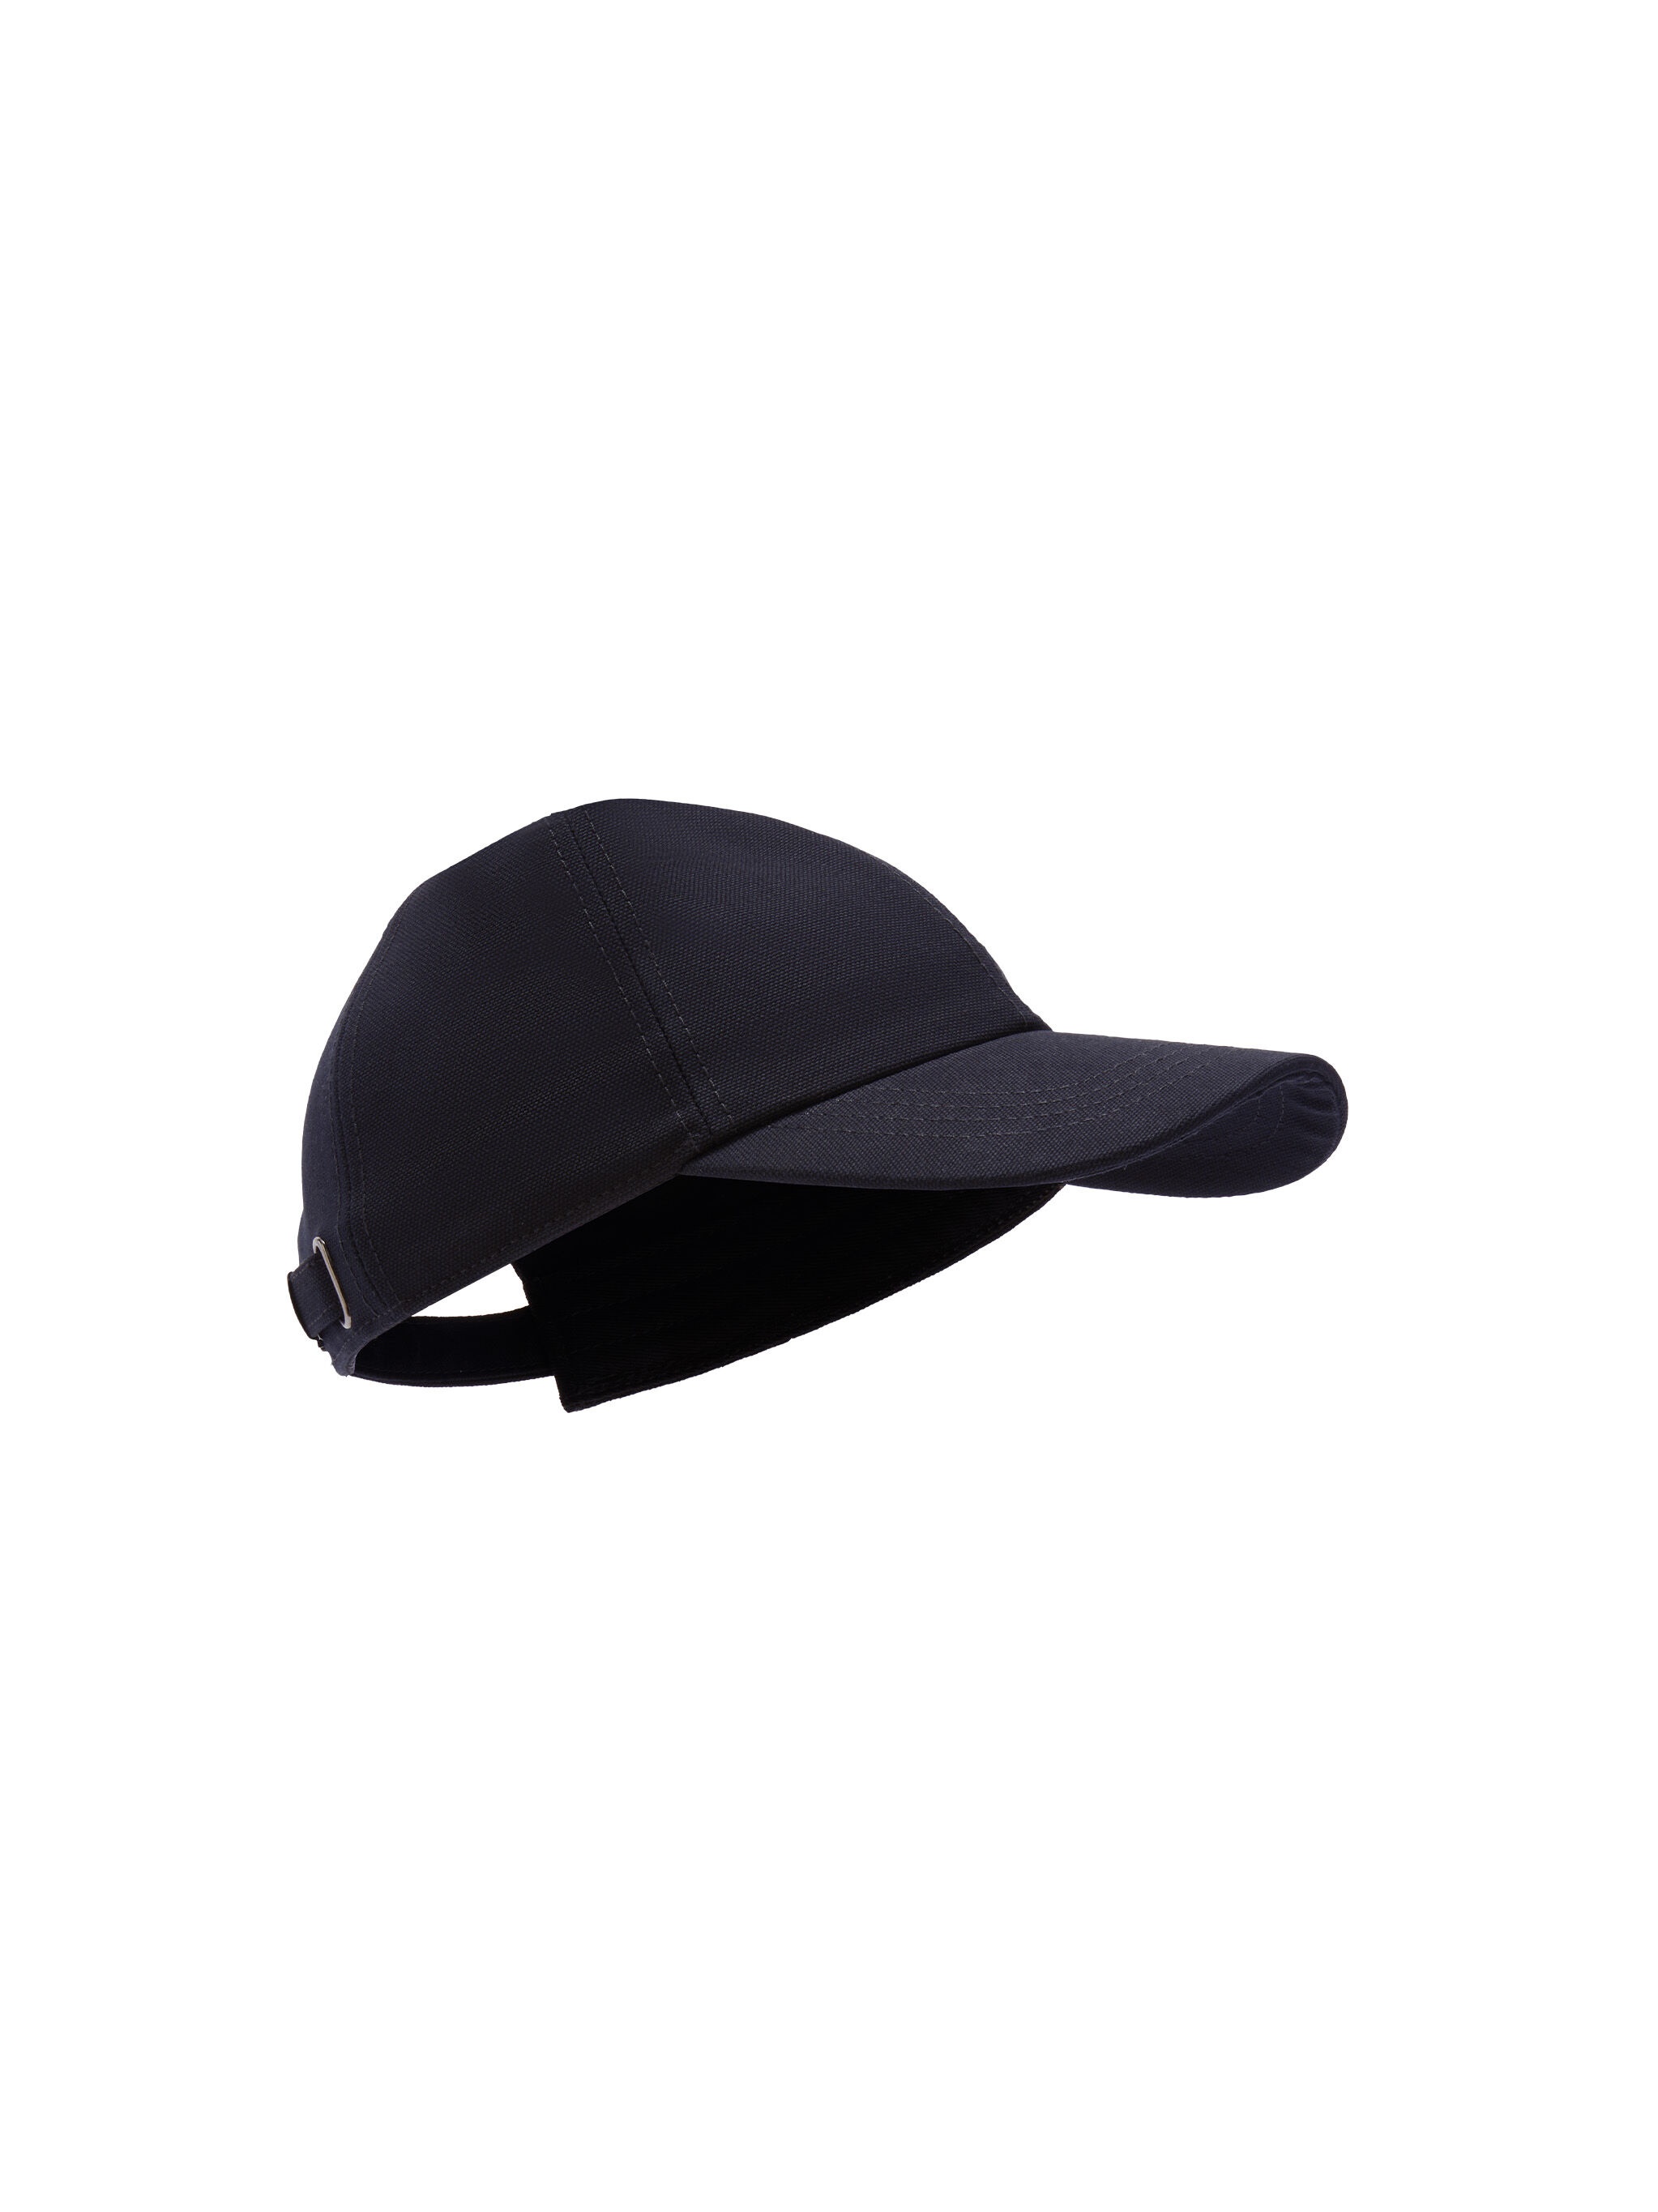 BLACK BASEBALL CAP - 1